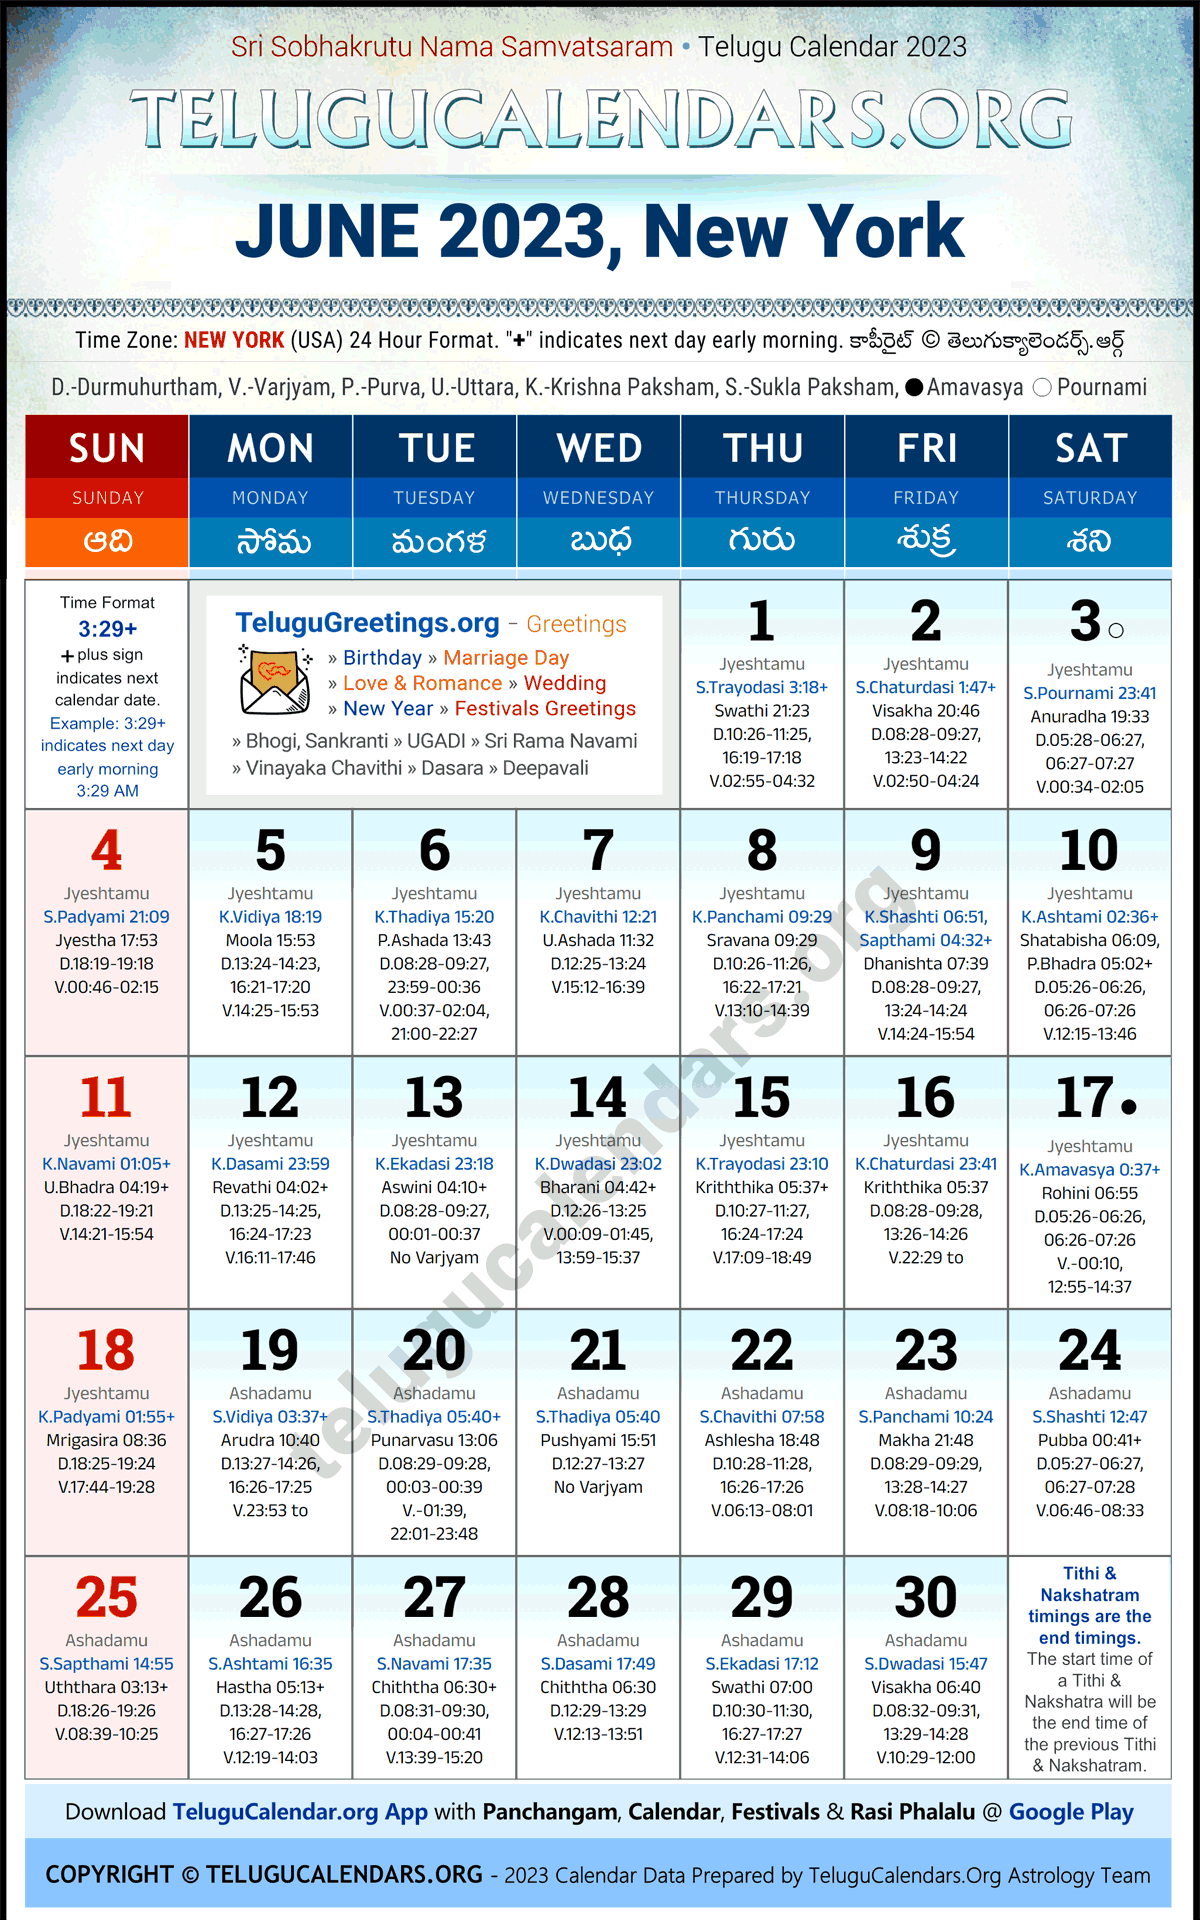 Telugu Calendar 2023 June Festivals for New York